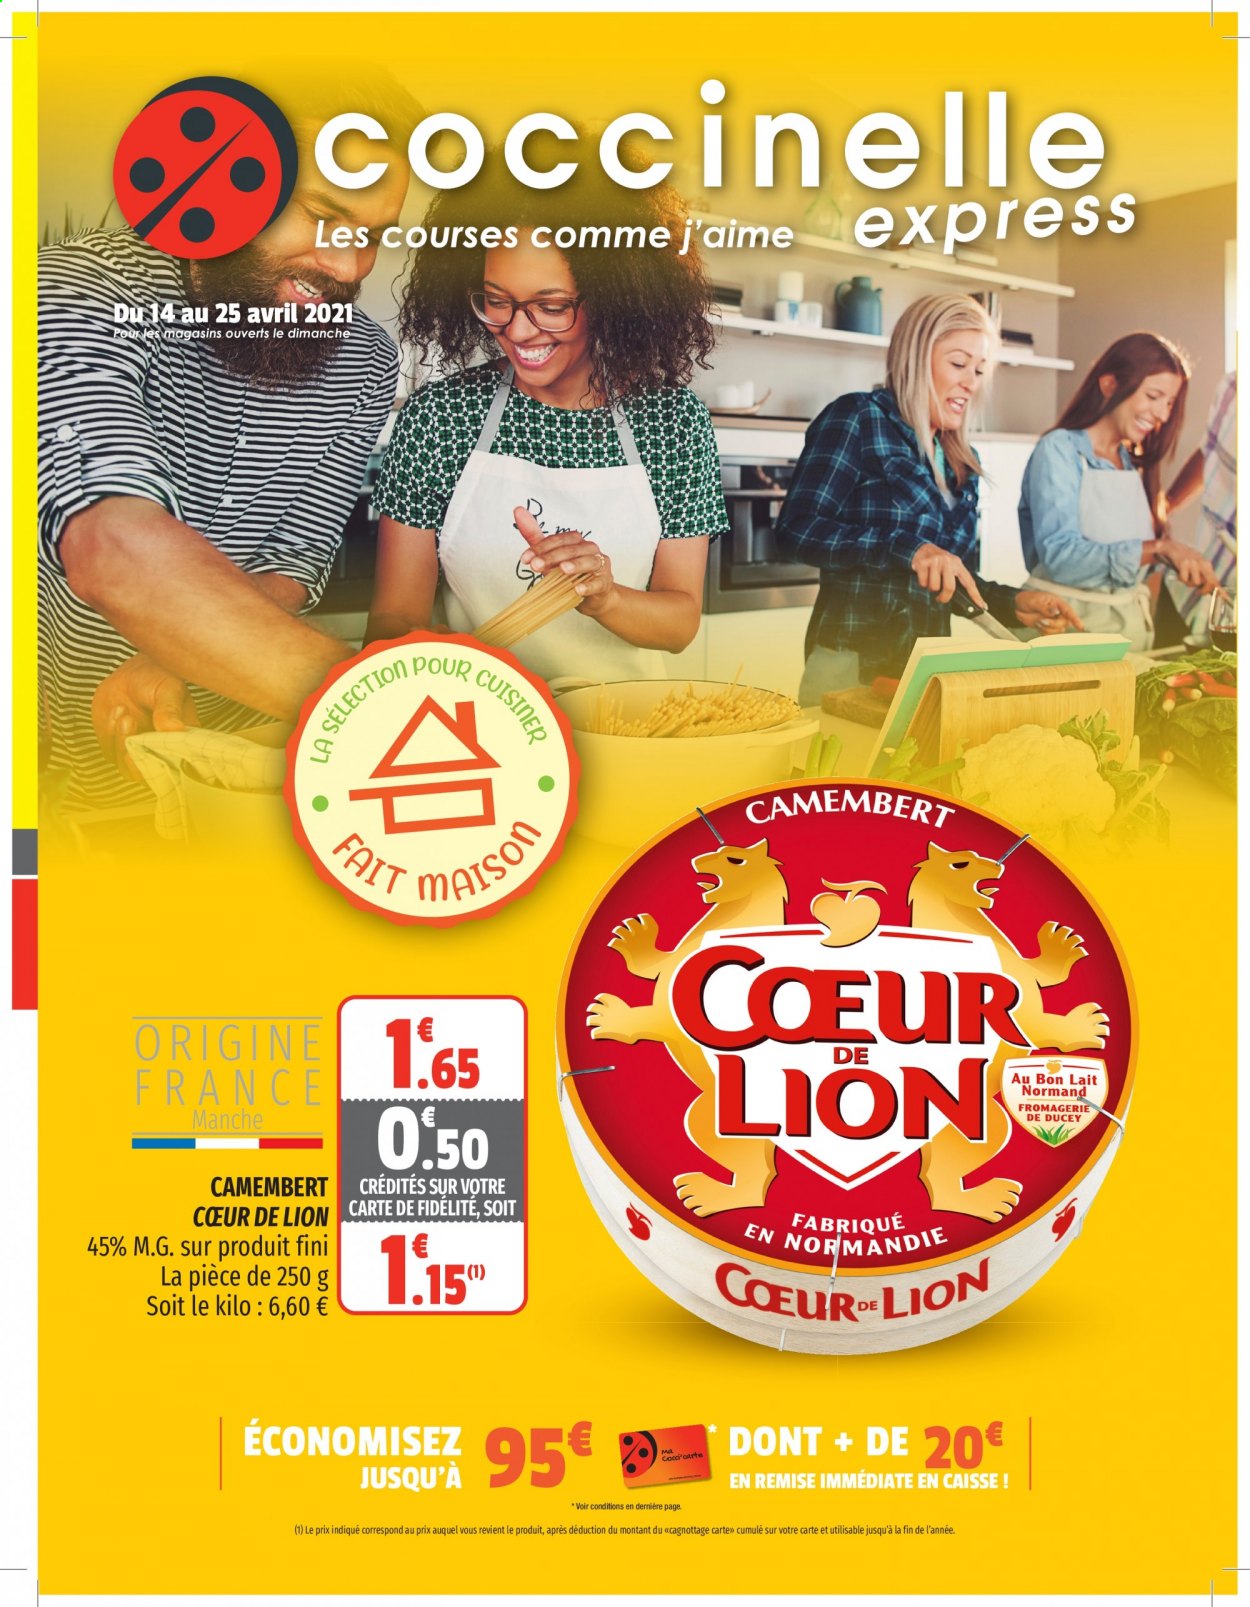 thumbnail - Catalogue Coccinelle Express - 14/04/2021 - 25/04/2021 - Produits soldés - camembert, lait. Page 1.